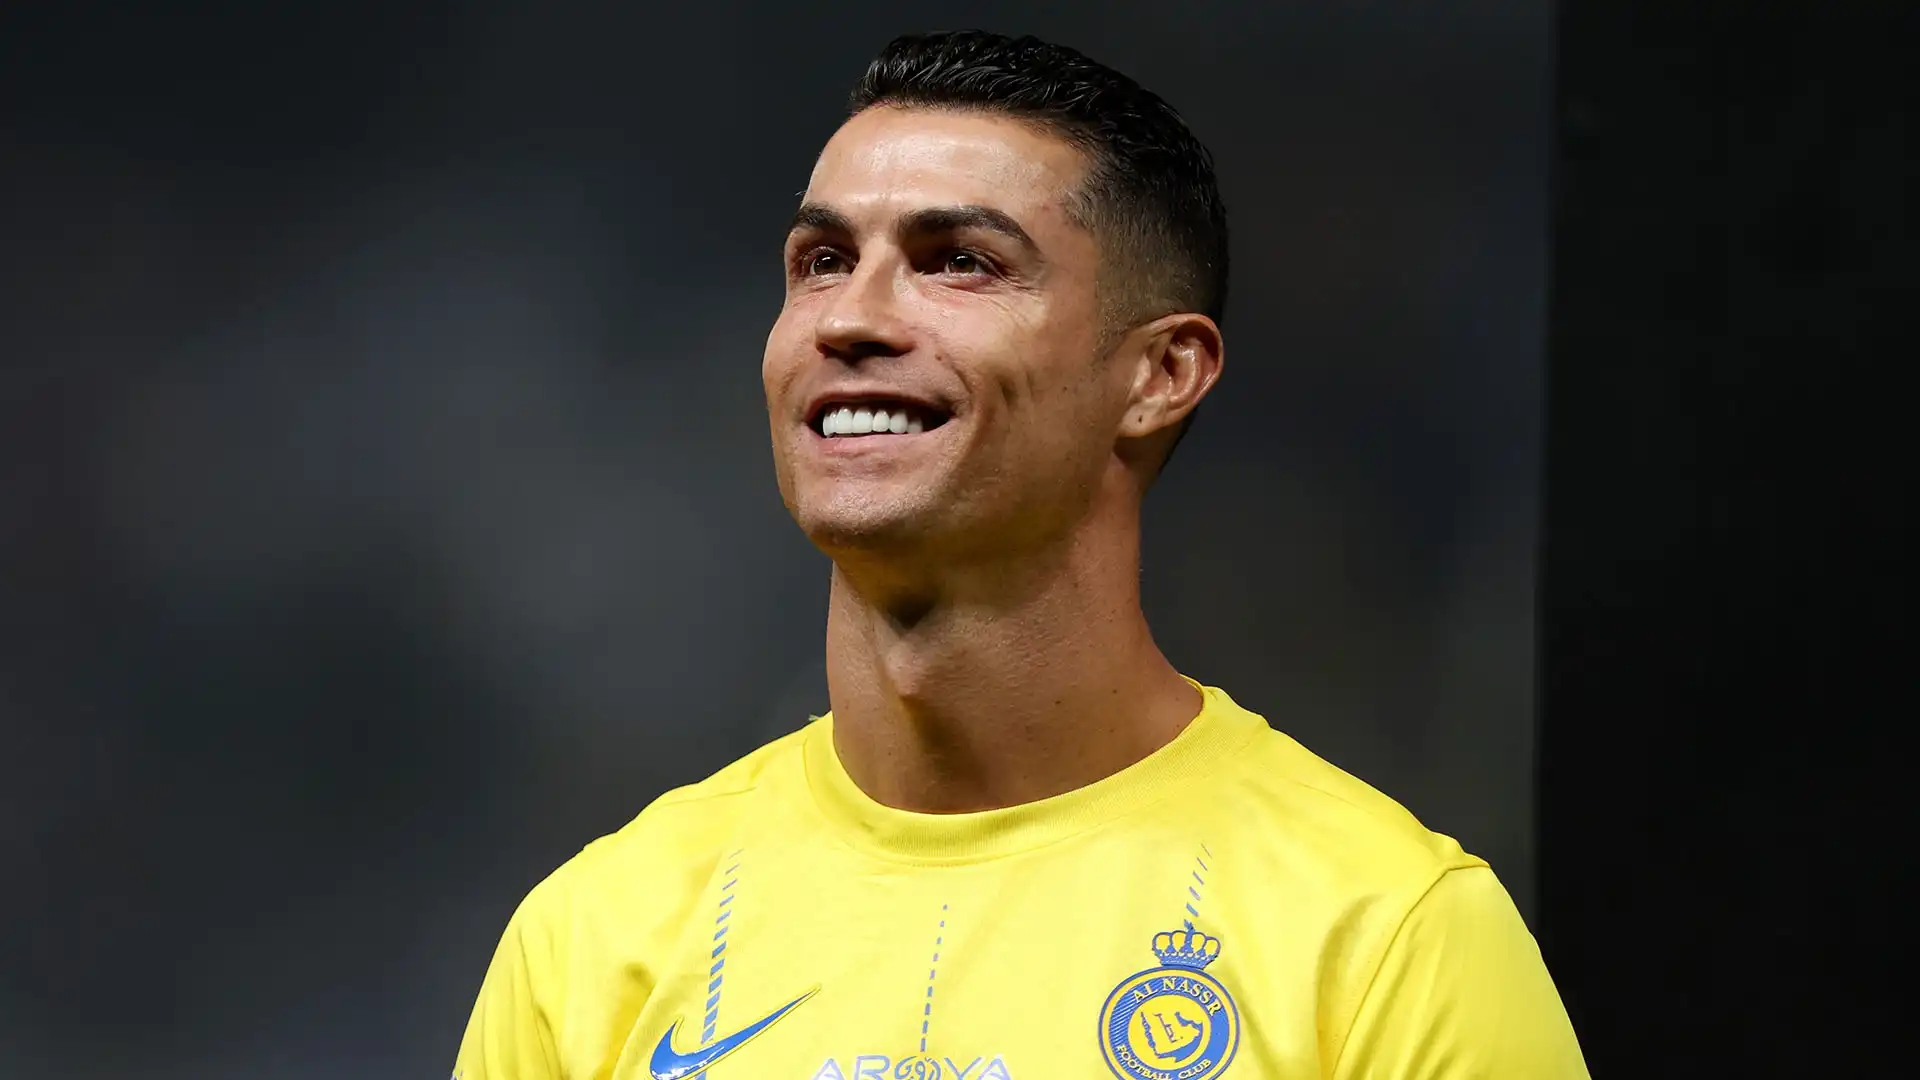 Complessivamente nella stagione 2023-2024 Cristiano Ronaldo ha giocato 45 partite, segnato 44 gol e servito 13 assist